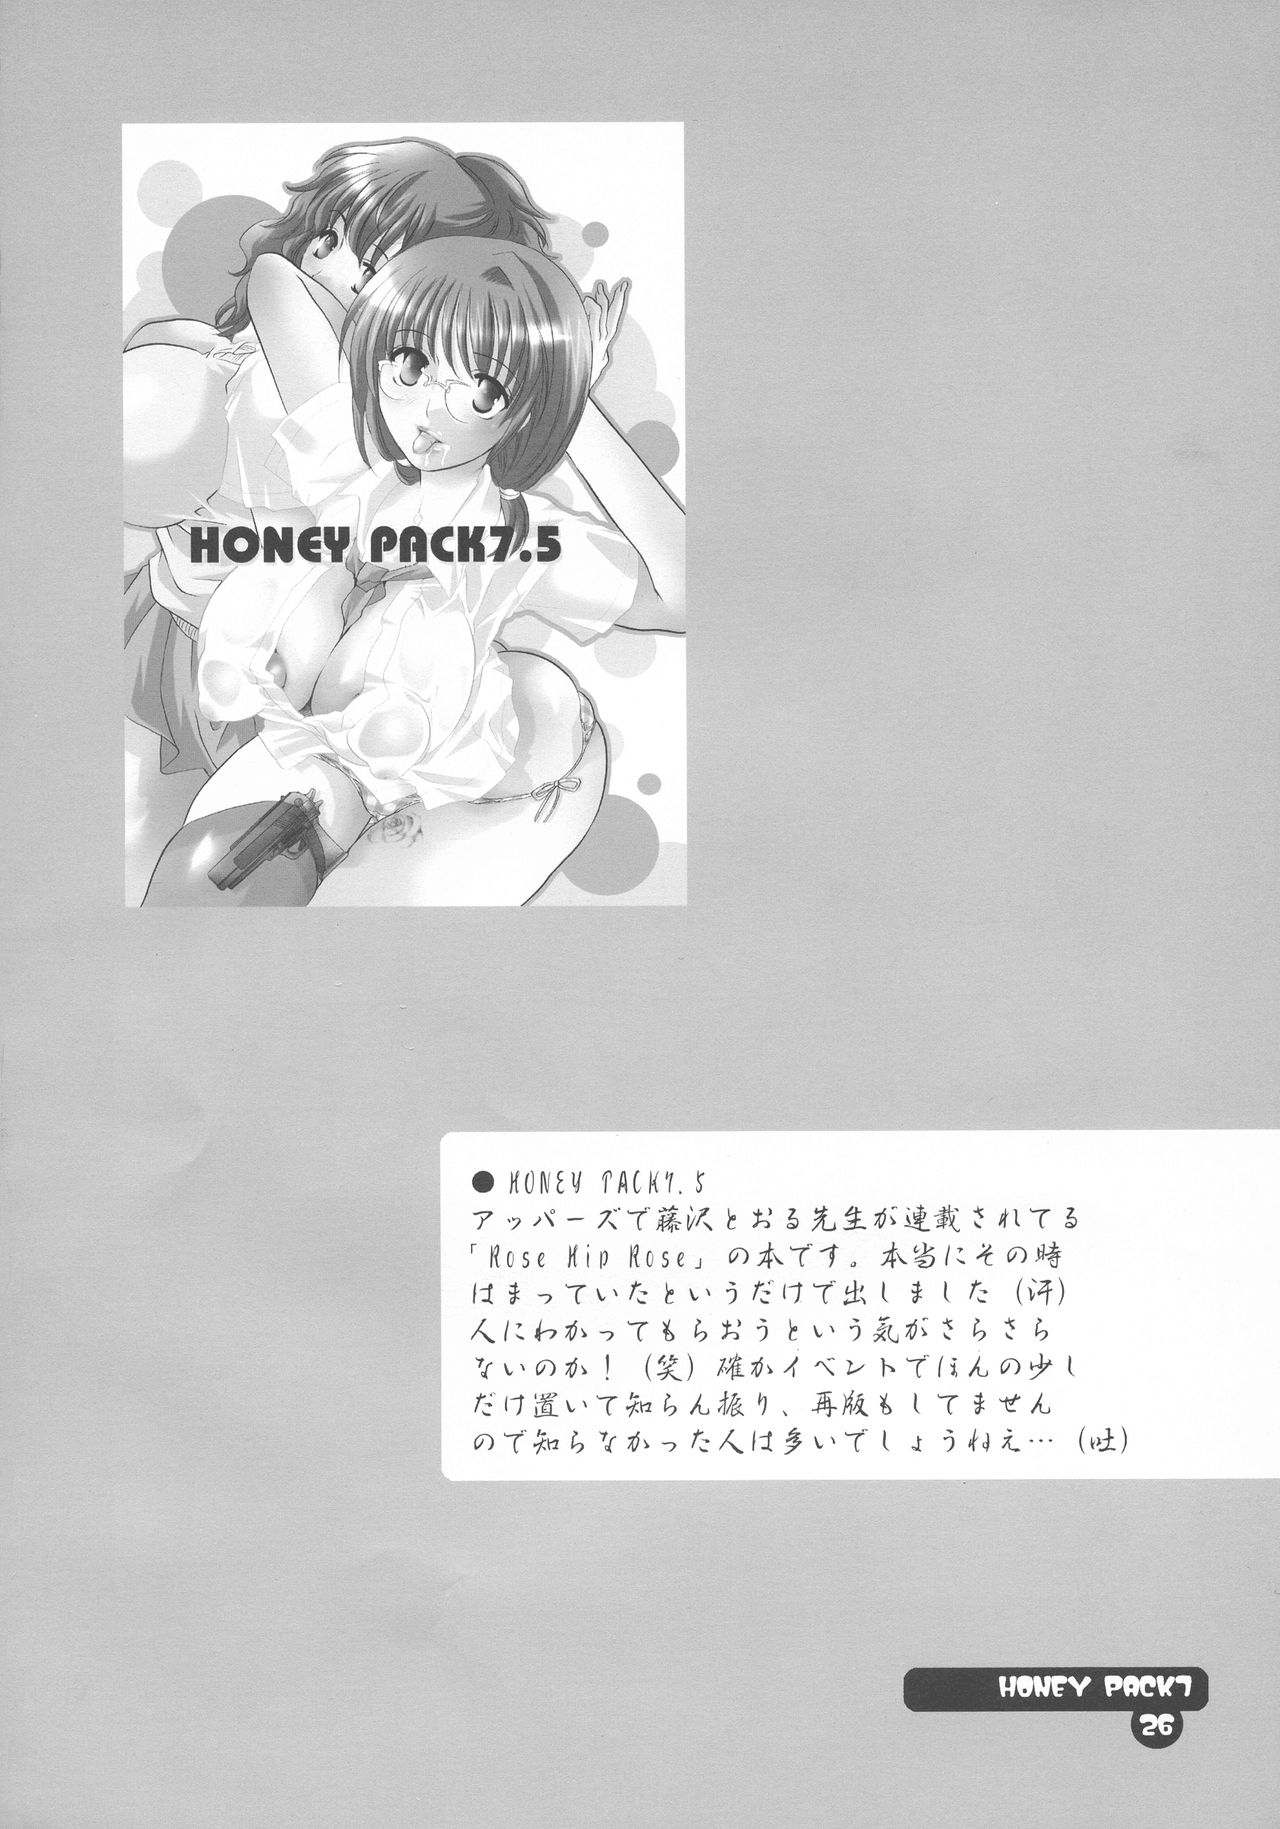 (コスチュームカフェ 12号店) [HONEY QP (命わずか)] HONEY PACK 07 (サモンナイト)